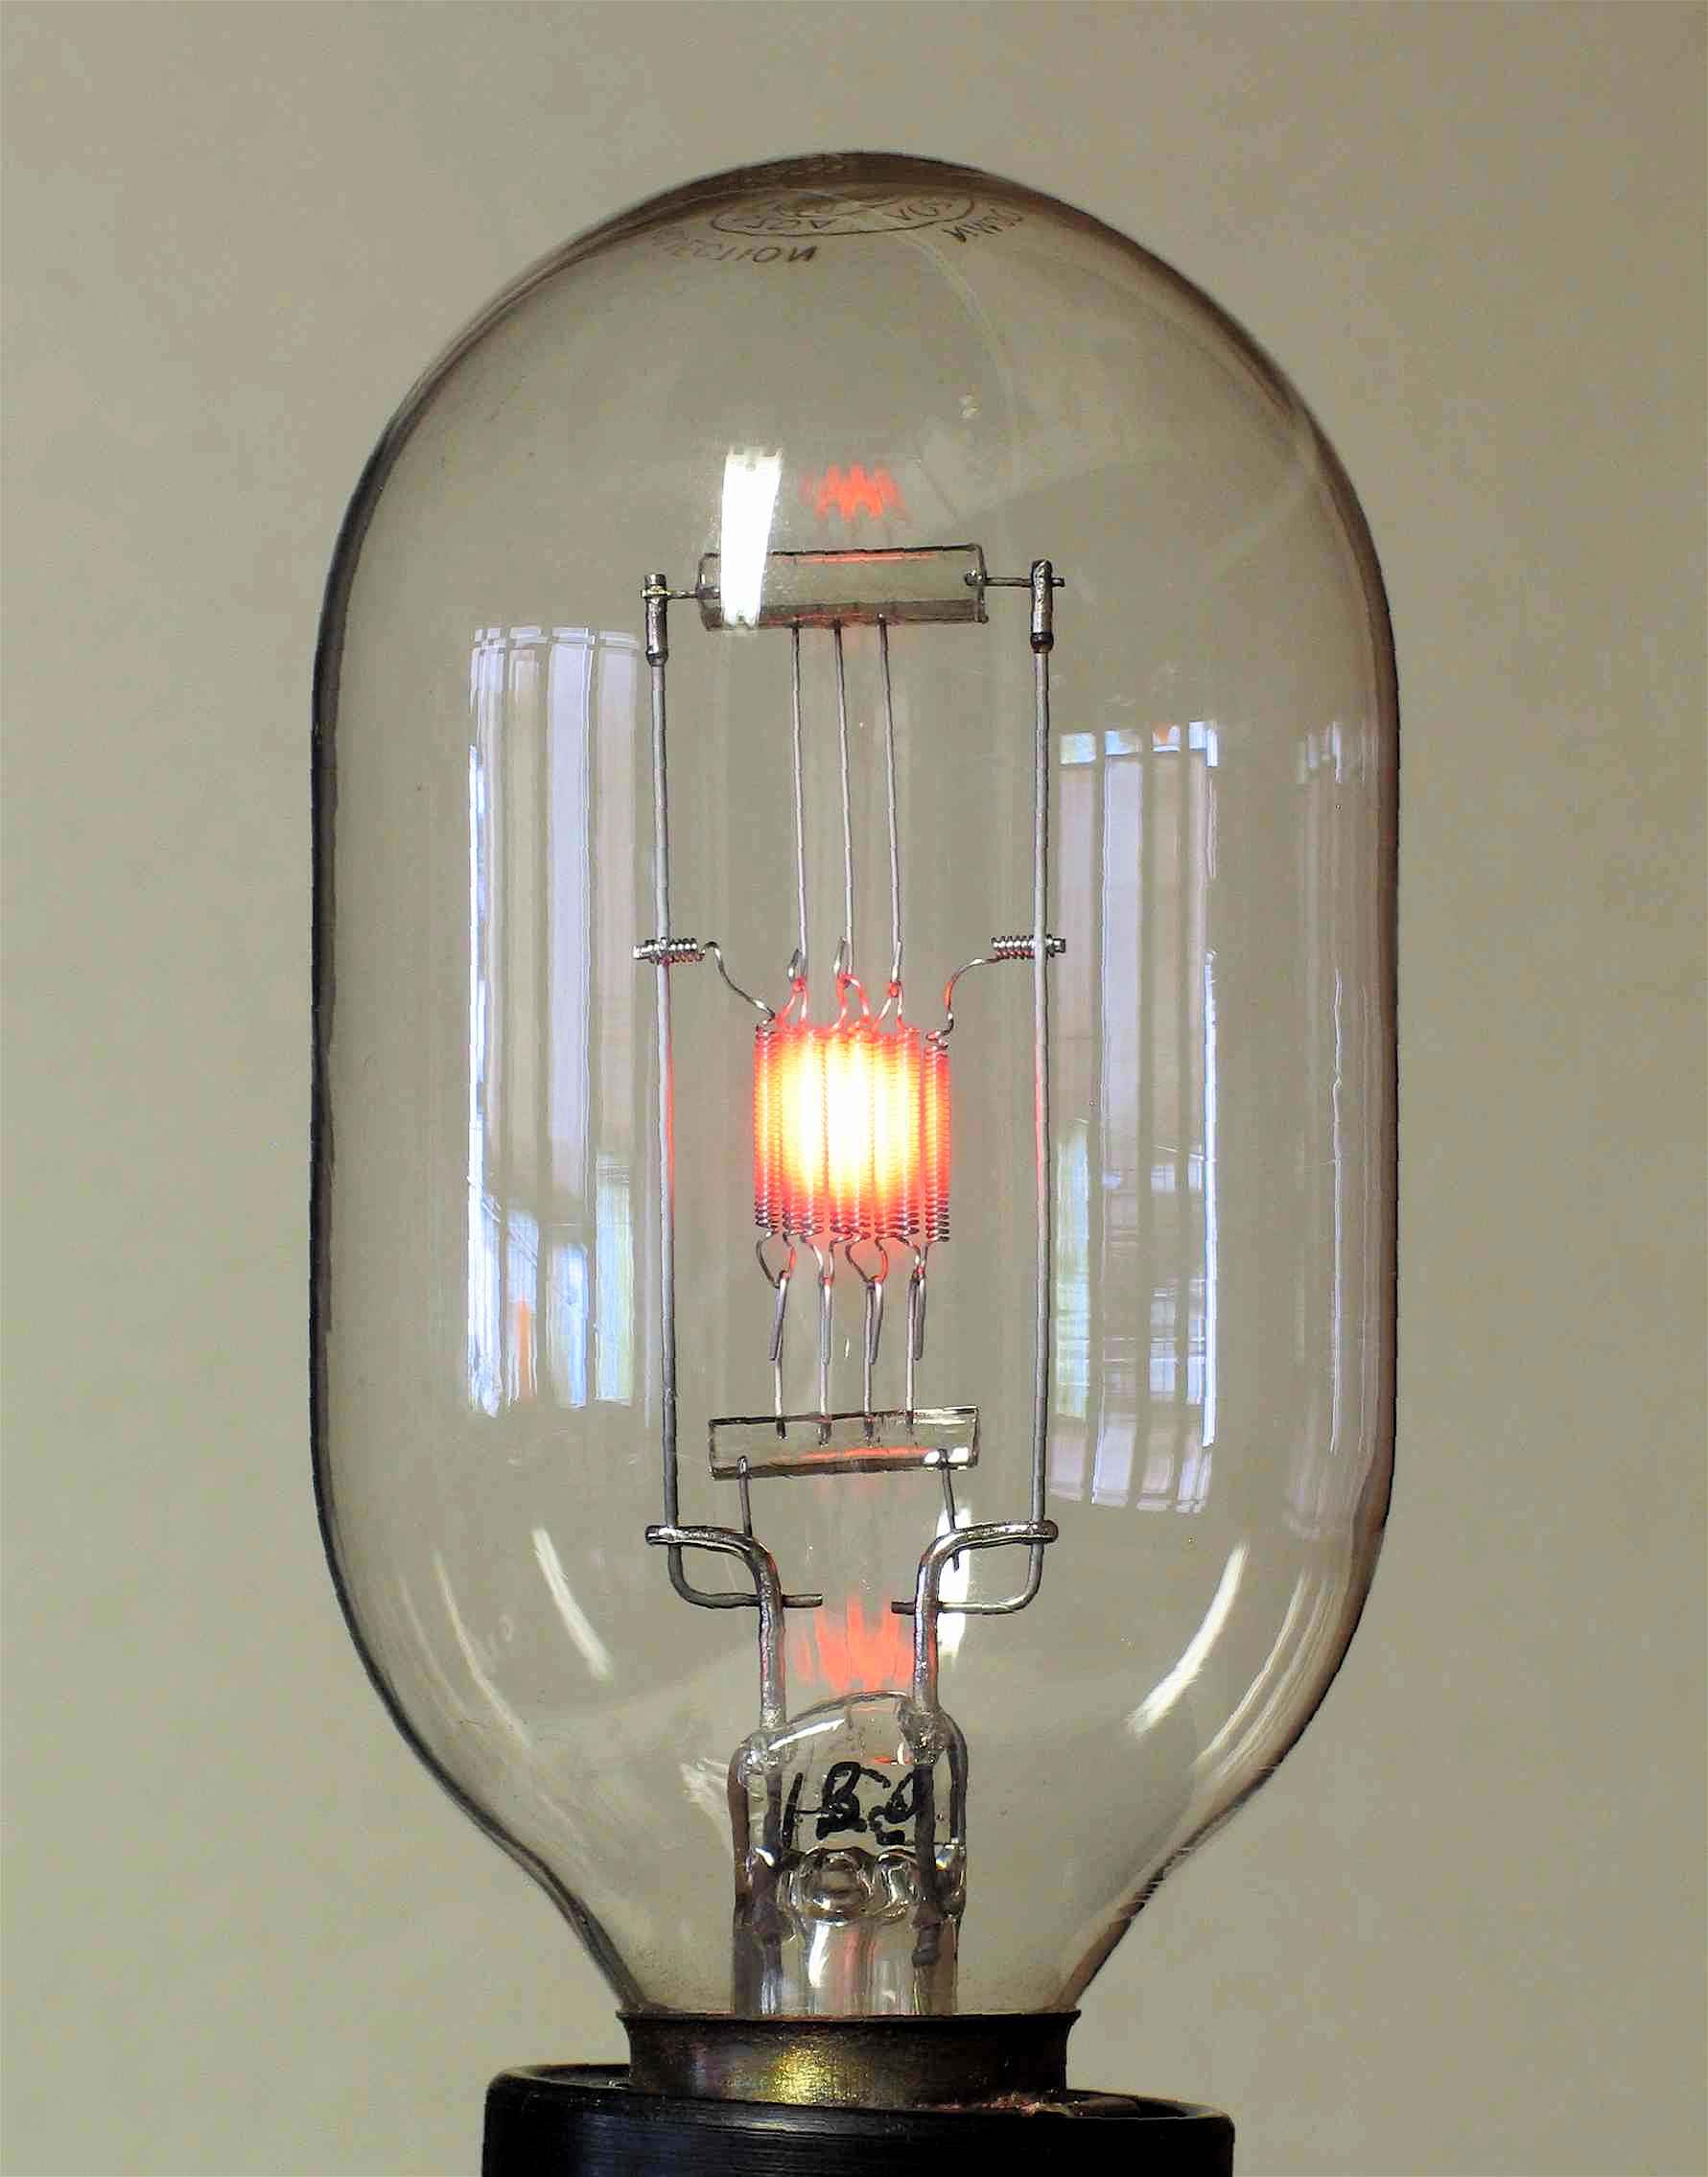 Lampe de projection à filament métallique
(GE MAZDA 1000W)